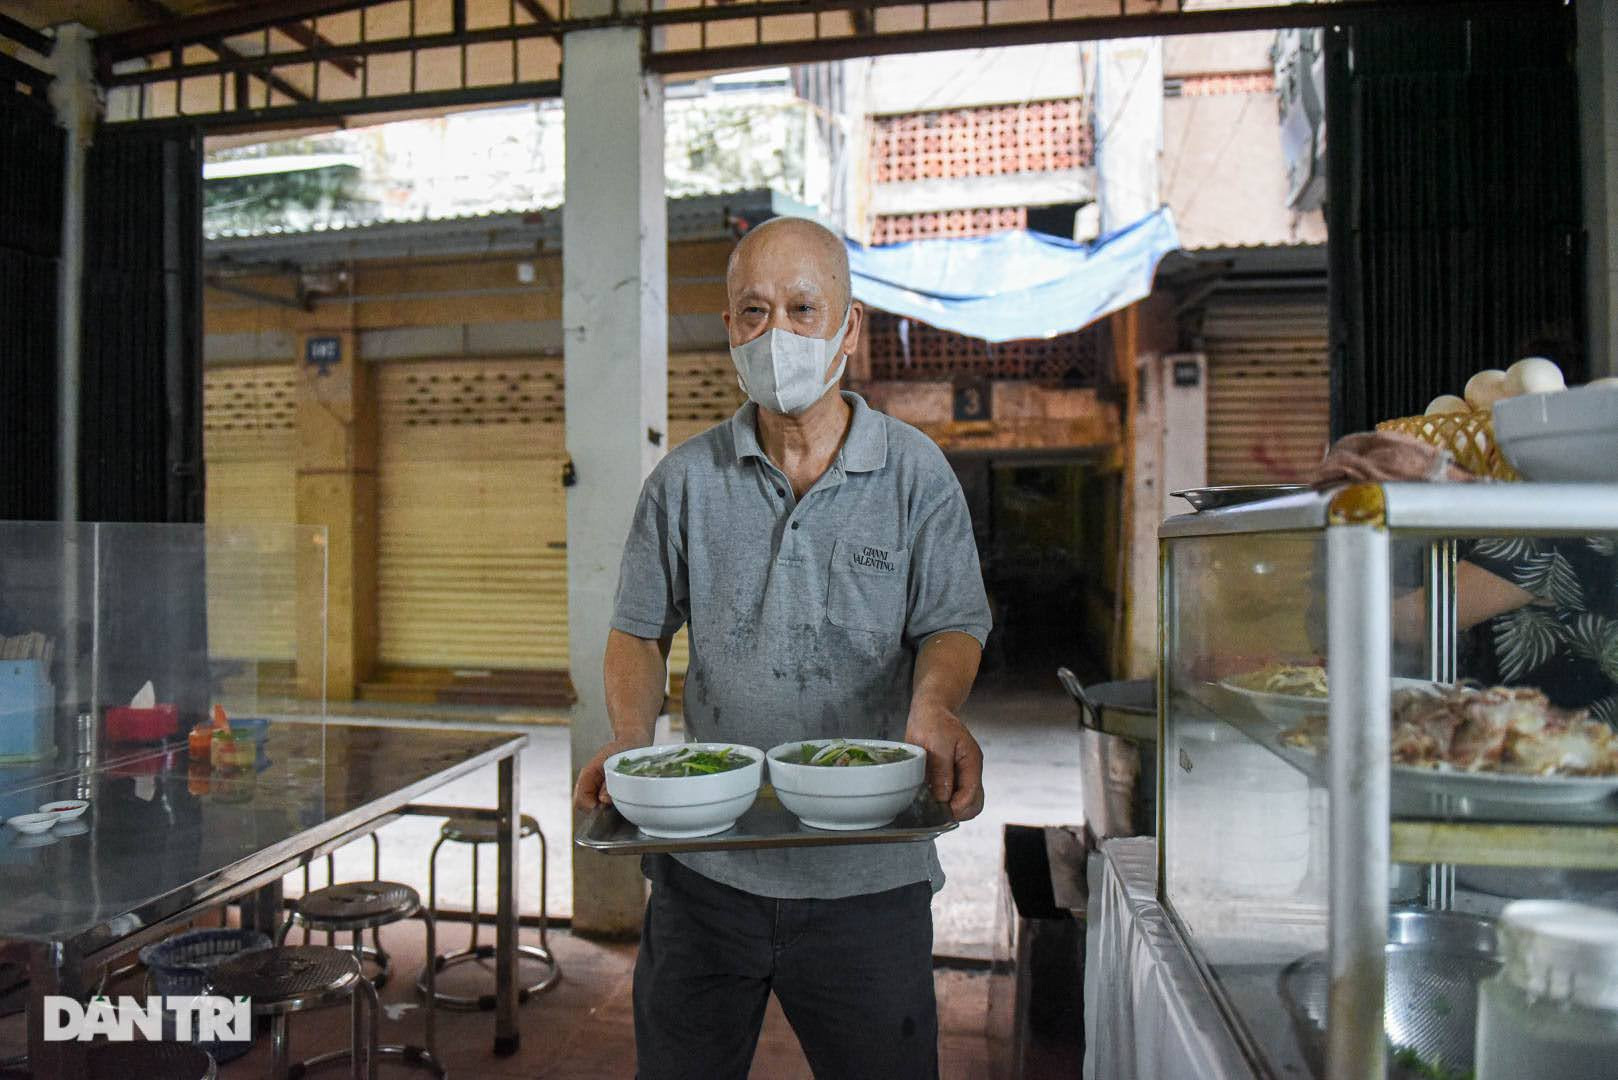 Hà Nội: Dịch hạ nhiệt, Đống Đa cho phép hàng quán ăn uống phục vụ tại chỗ - 1